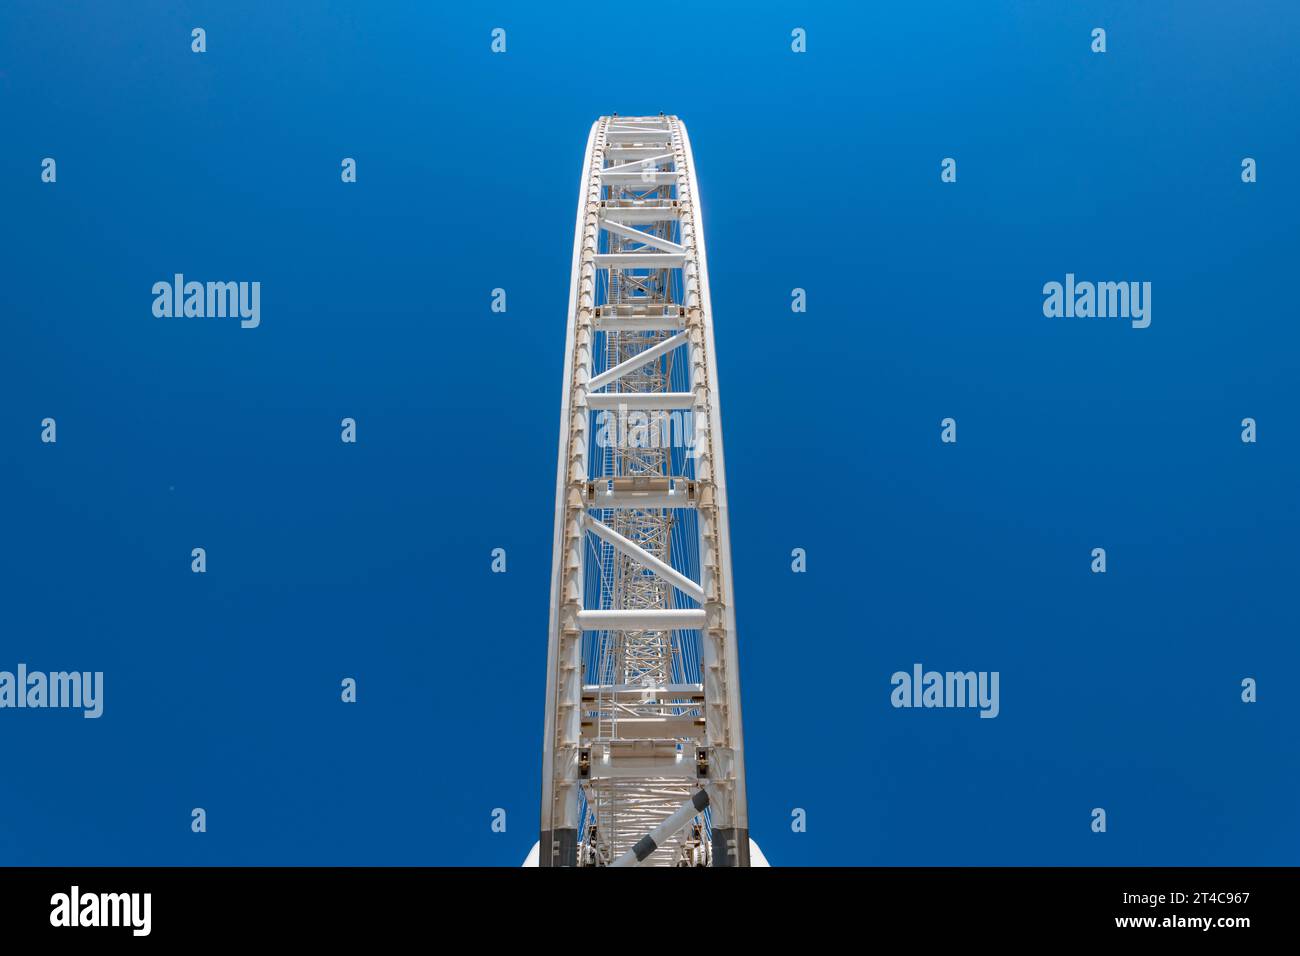 Émirats arabes Unis, Dubaï, 8 décembre 2018. AIN DUBAI, également connu sous le nom de Dubai Eye, grande roue s'élevant à 250 mètres, en construction Banque D'Images